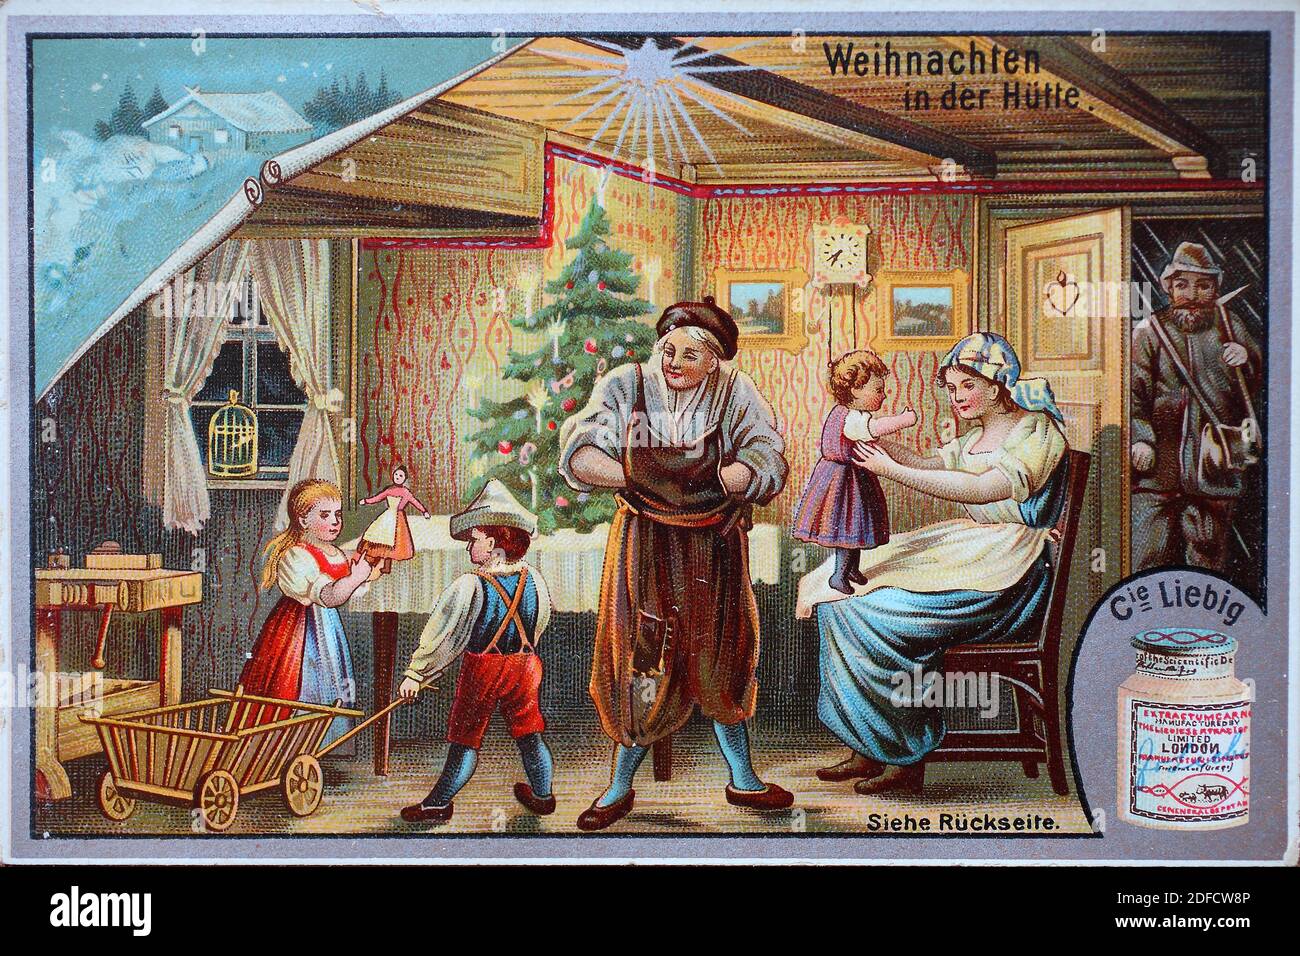 Serie de fotos Navidad, Navidad en la cabaña / Bildserie Weihnachtsfest, Weihnachten in der Hütte, Liebibild, mejora digital de la reproducción de una imagen coleccionable de la empresa Liebig, estimada a partir de 1900, pd / digital verbesserte Reproduktion eines Sammelbildes von ca 1900, gemeinfrei, Foto de stock